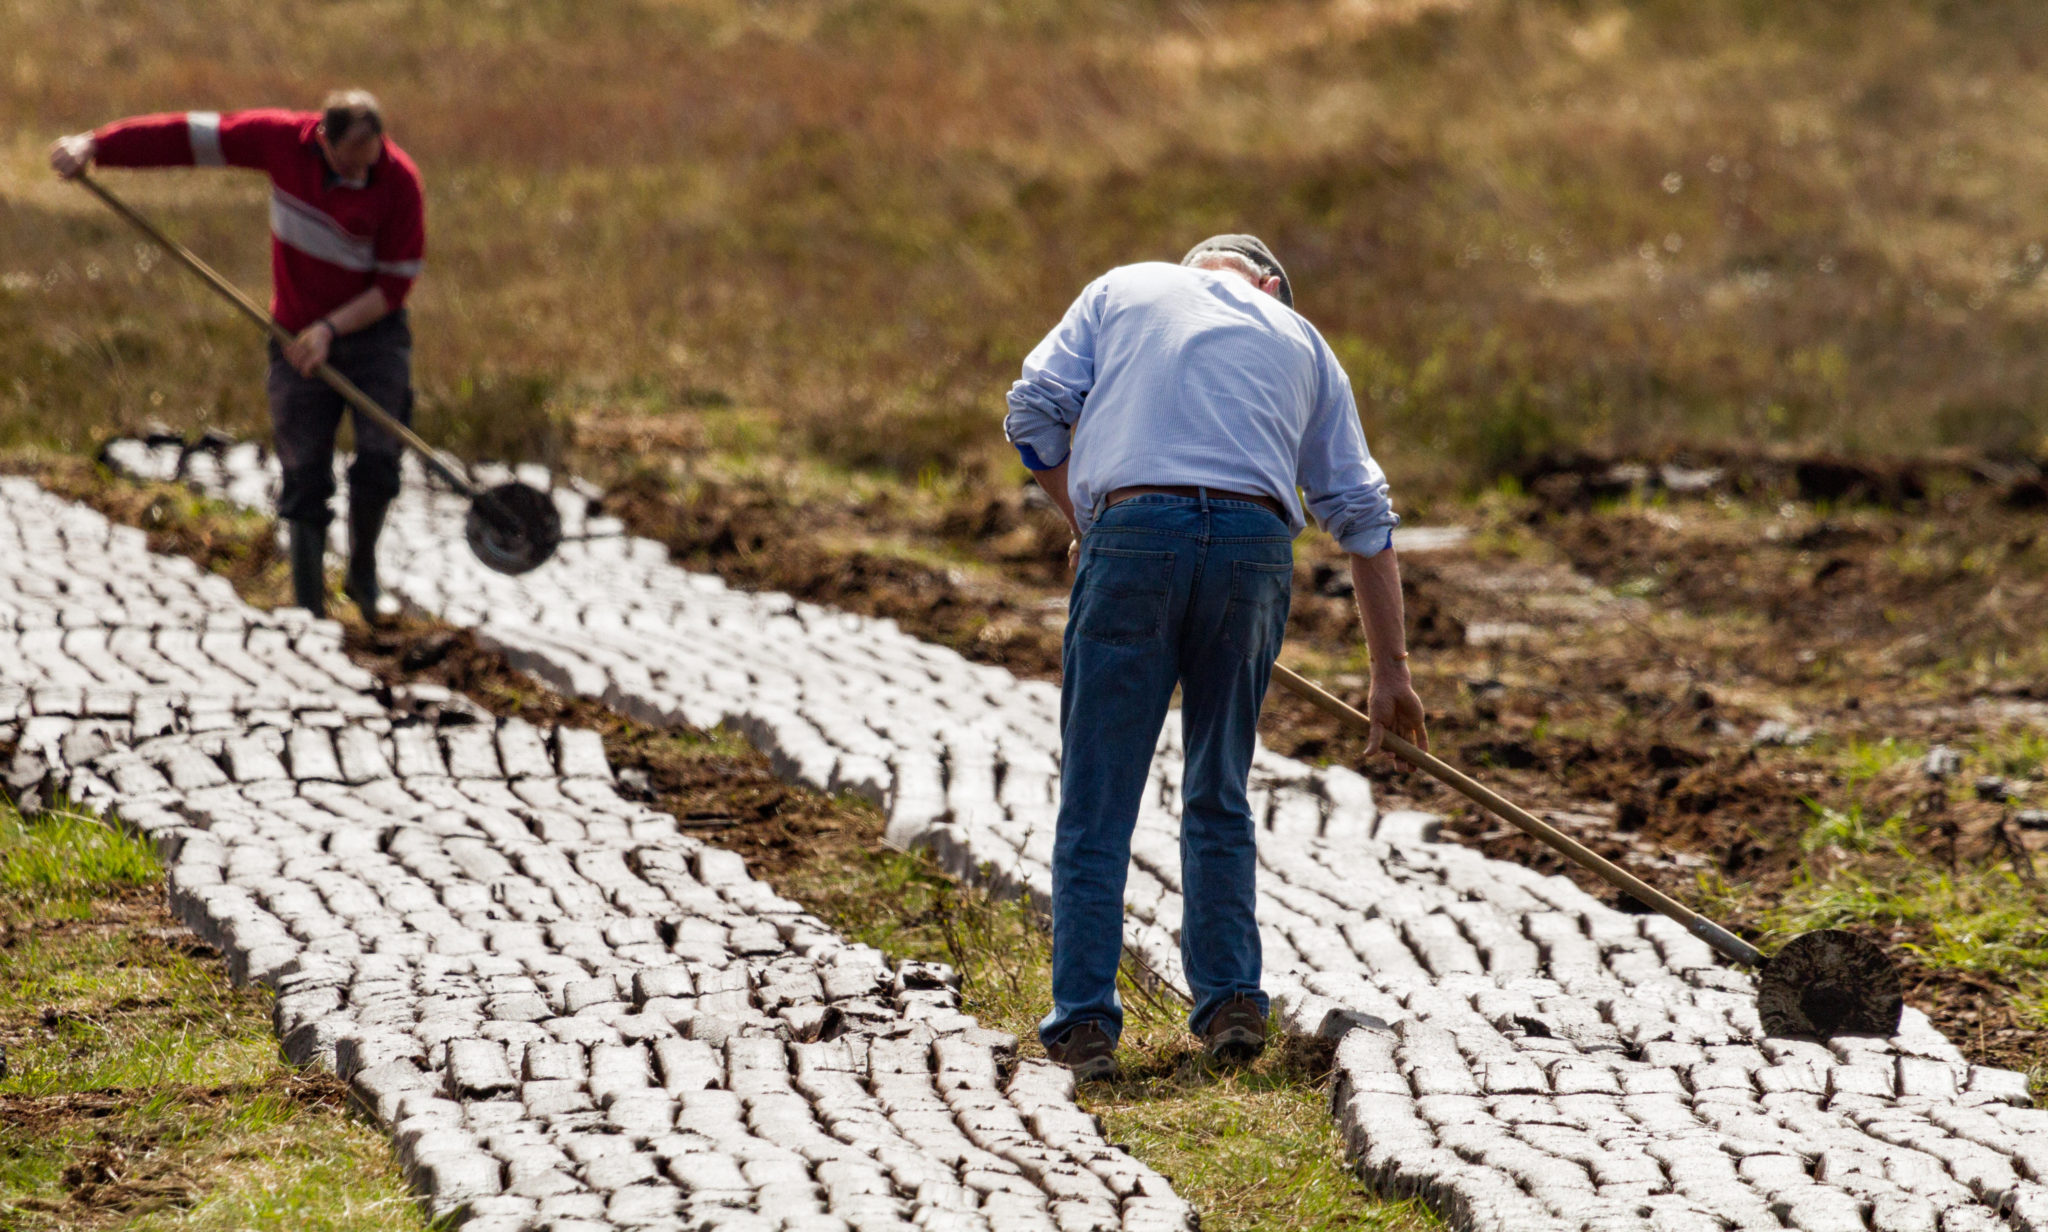 Men cutting turf in a peat bog field in Ireland in April 2019.